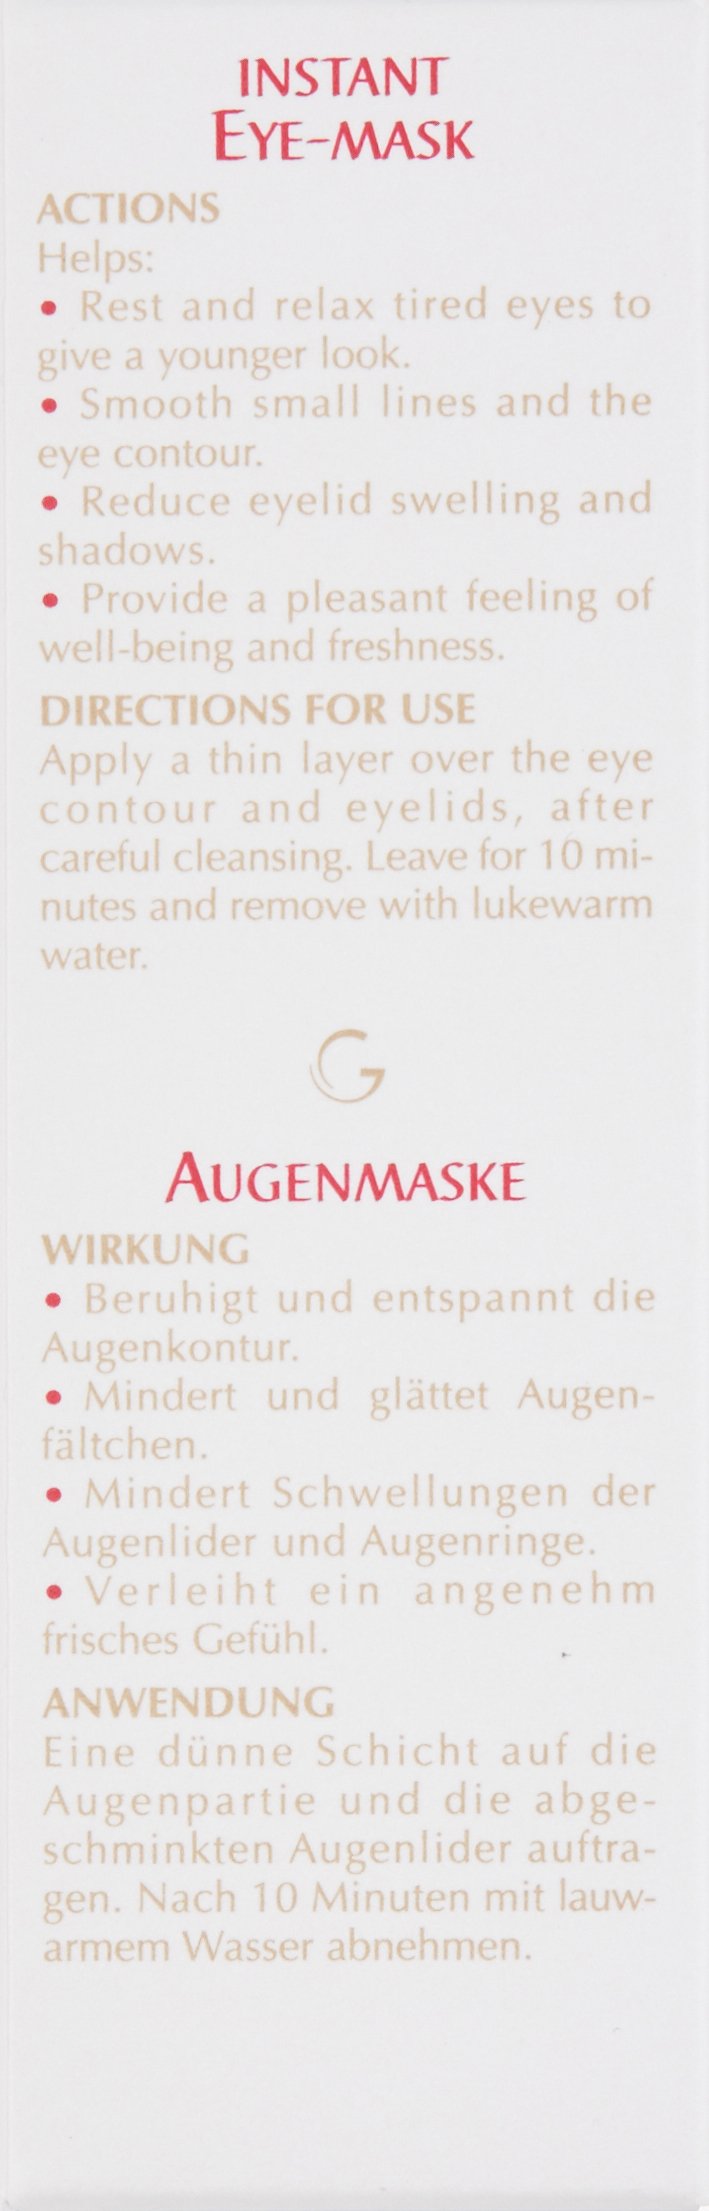 Guinot Instant Eye Mask, 1.05 oz